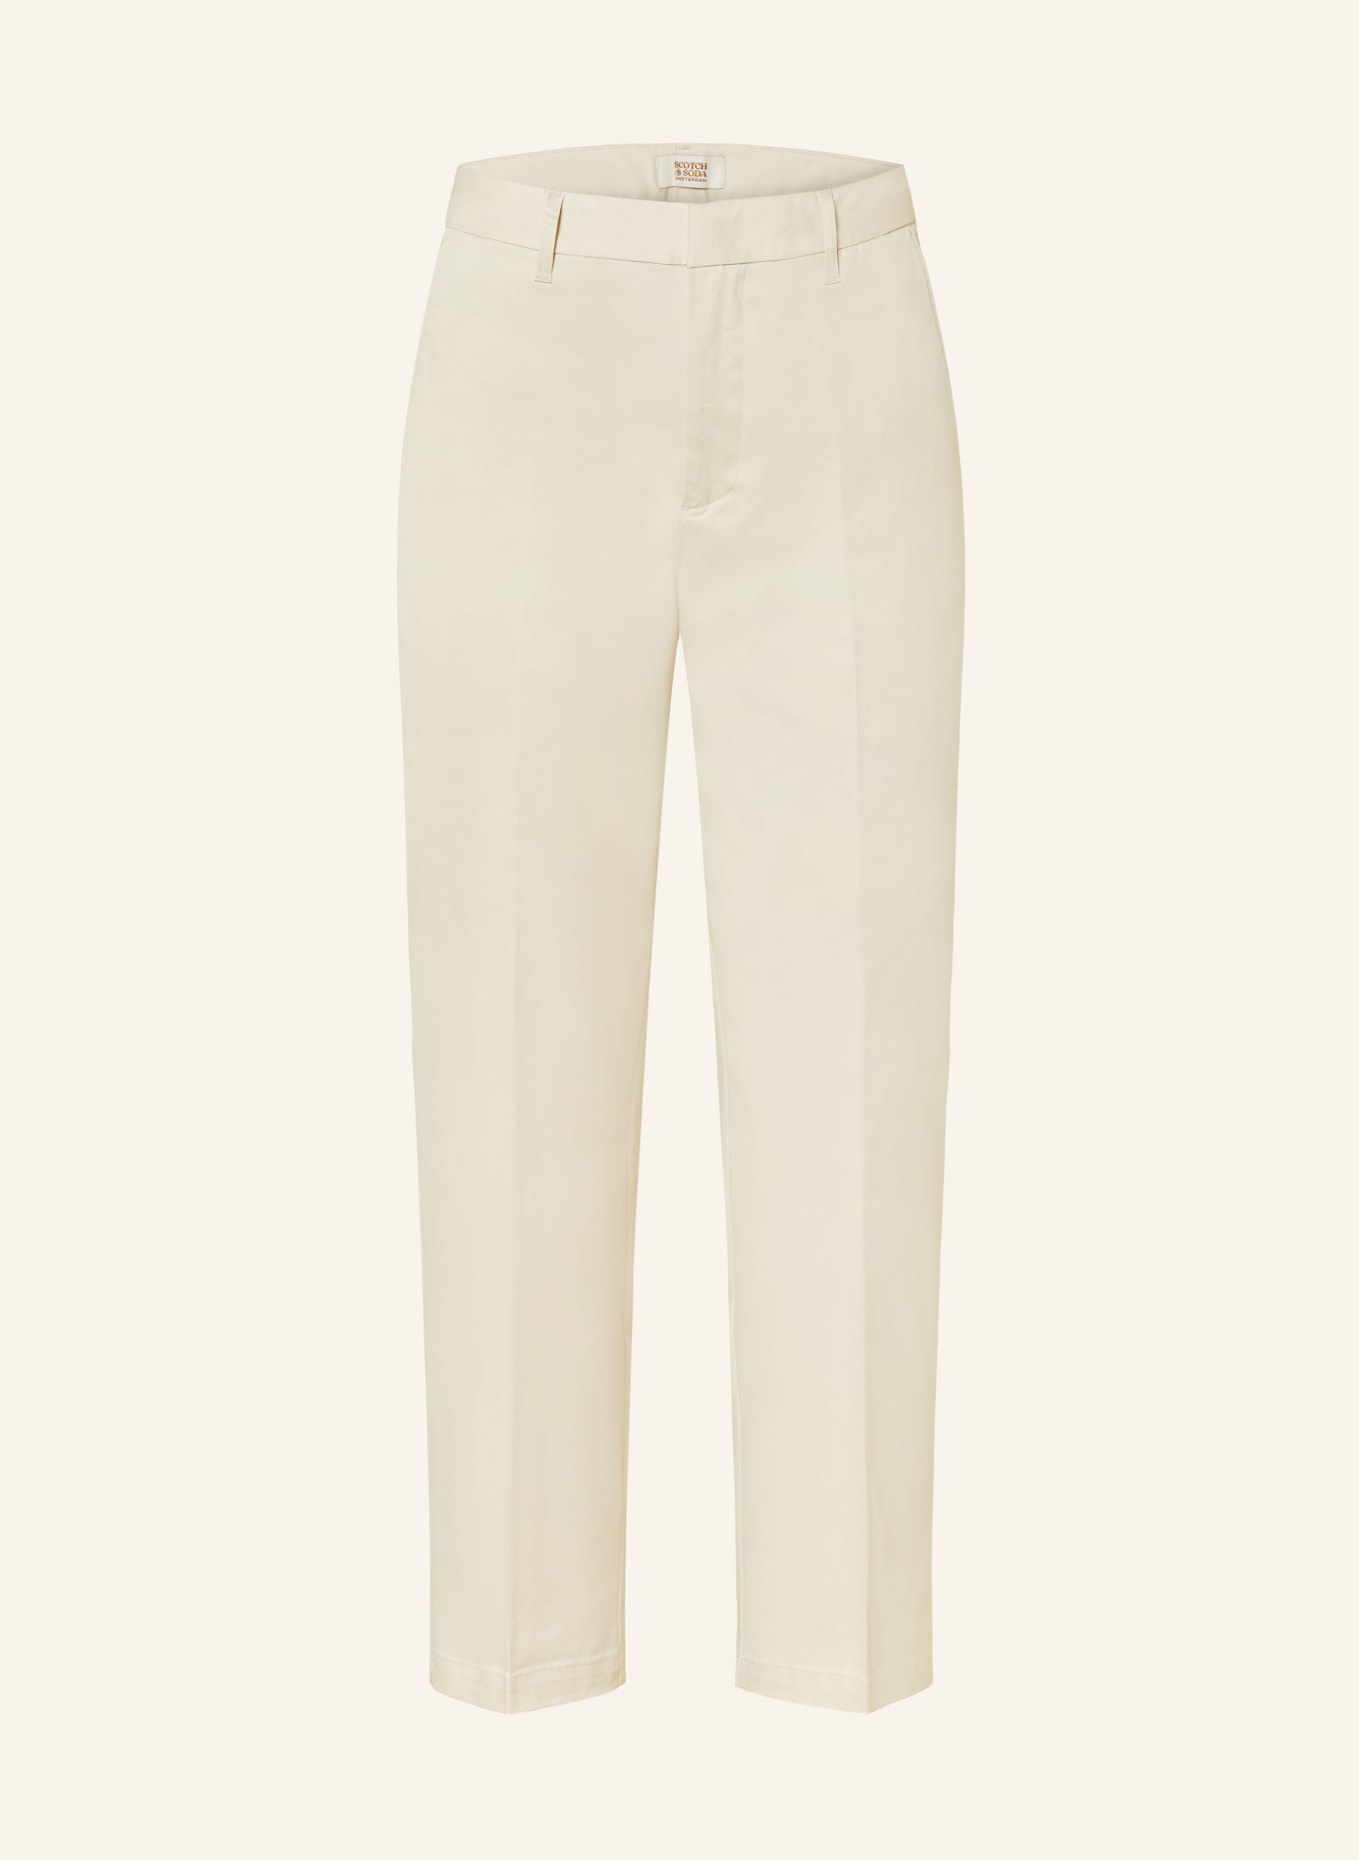 SCOTCH & SODA 7/8 trousers ABOTT, Color: ECRU (Image 1)